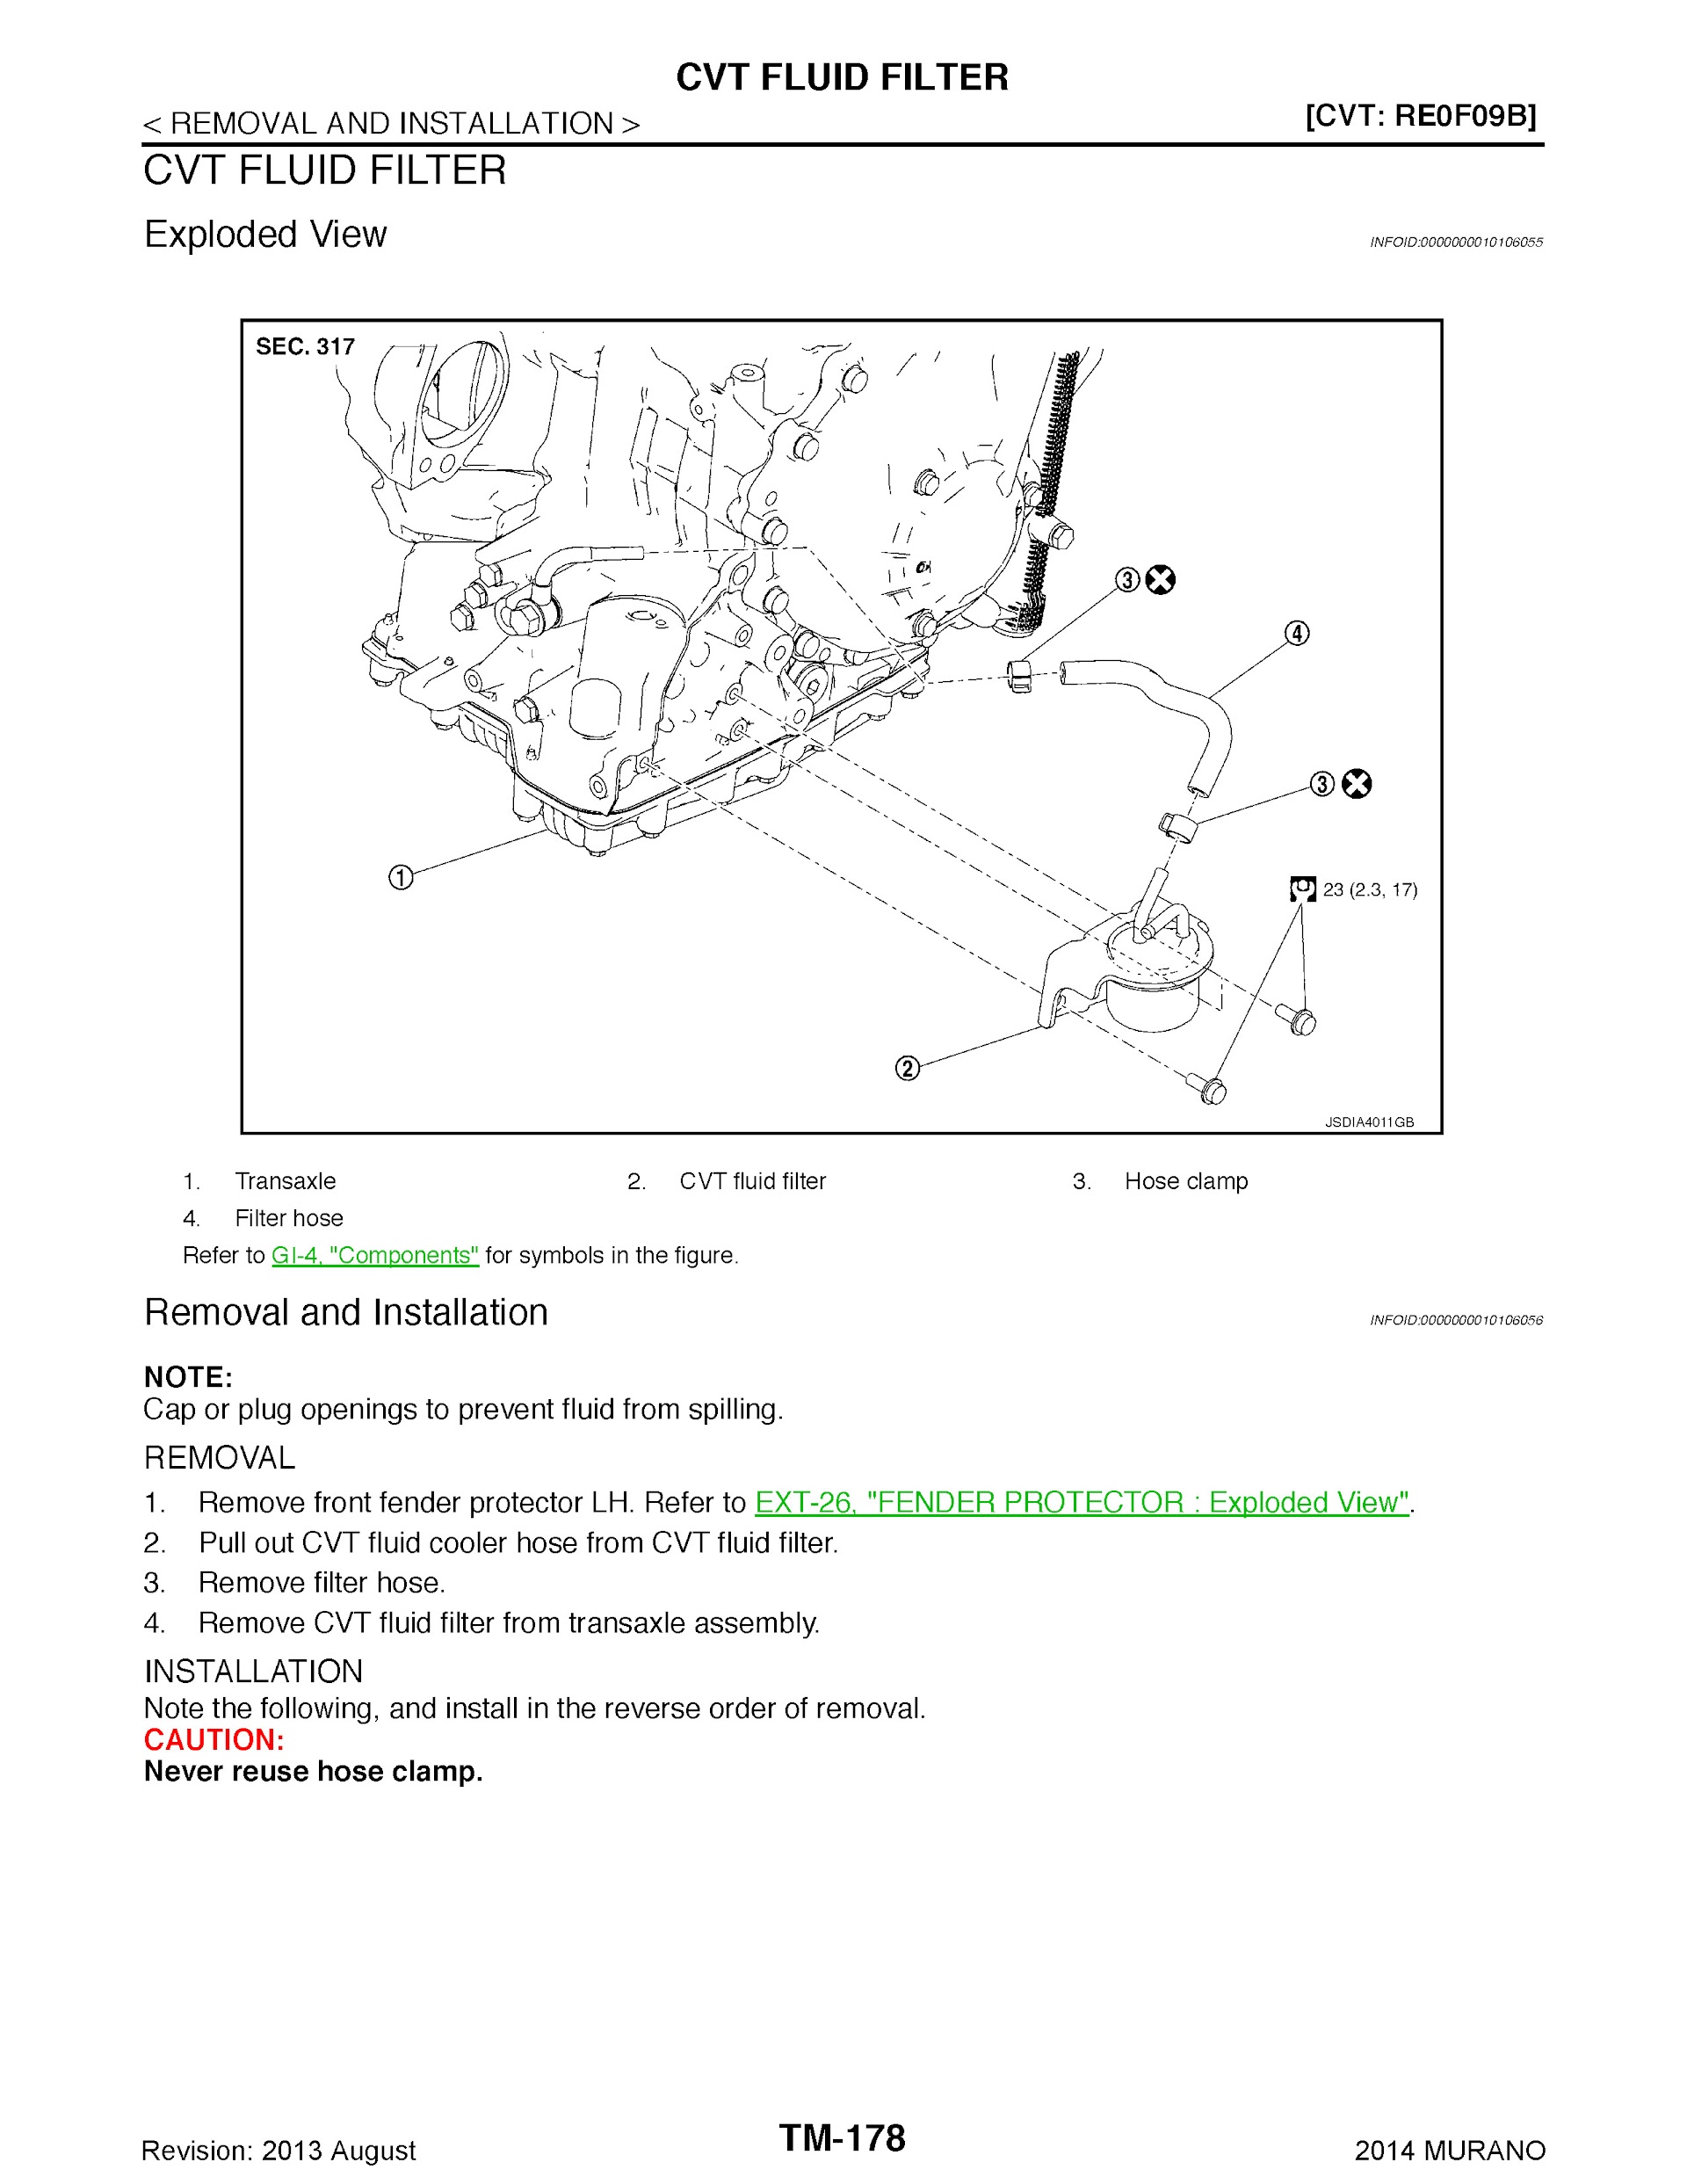 2009-2014 Nissan Murano Repair Manual, CVT Fluid Filter